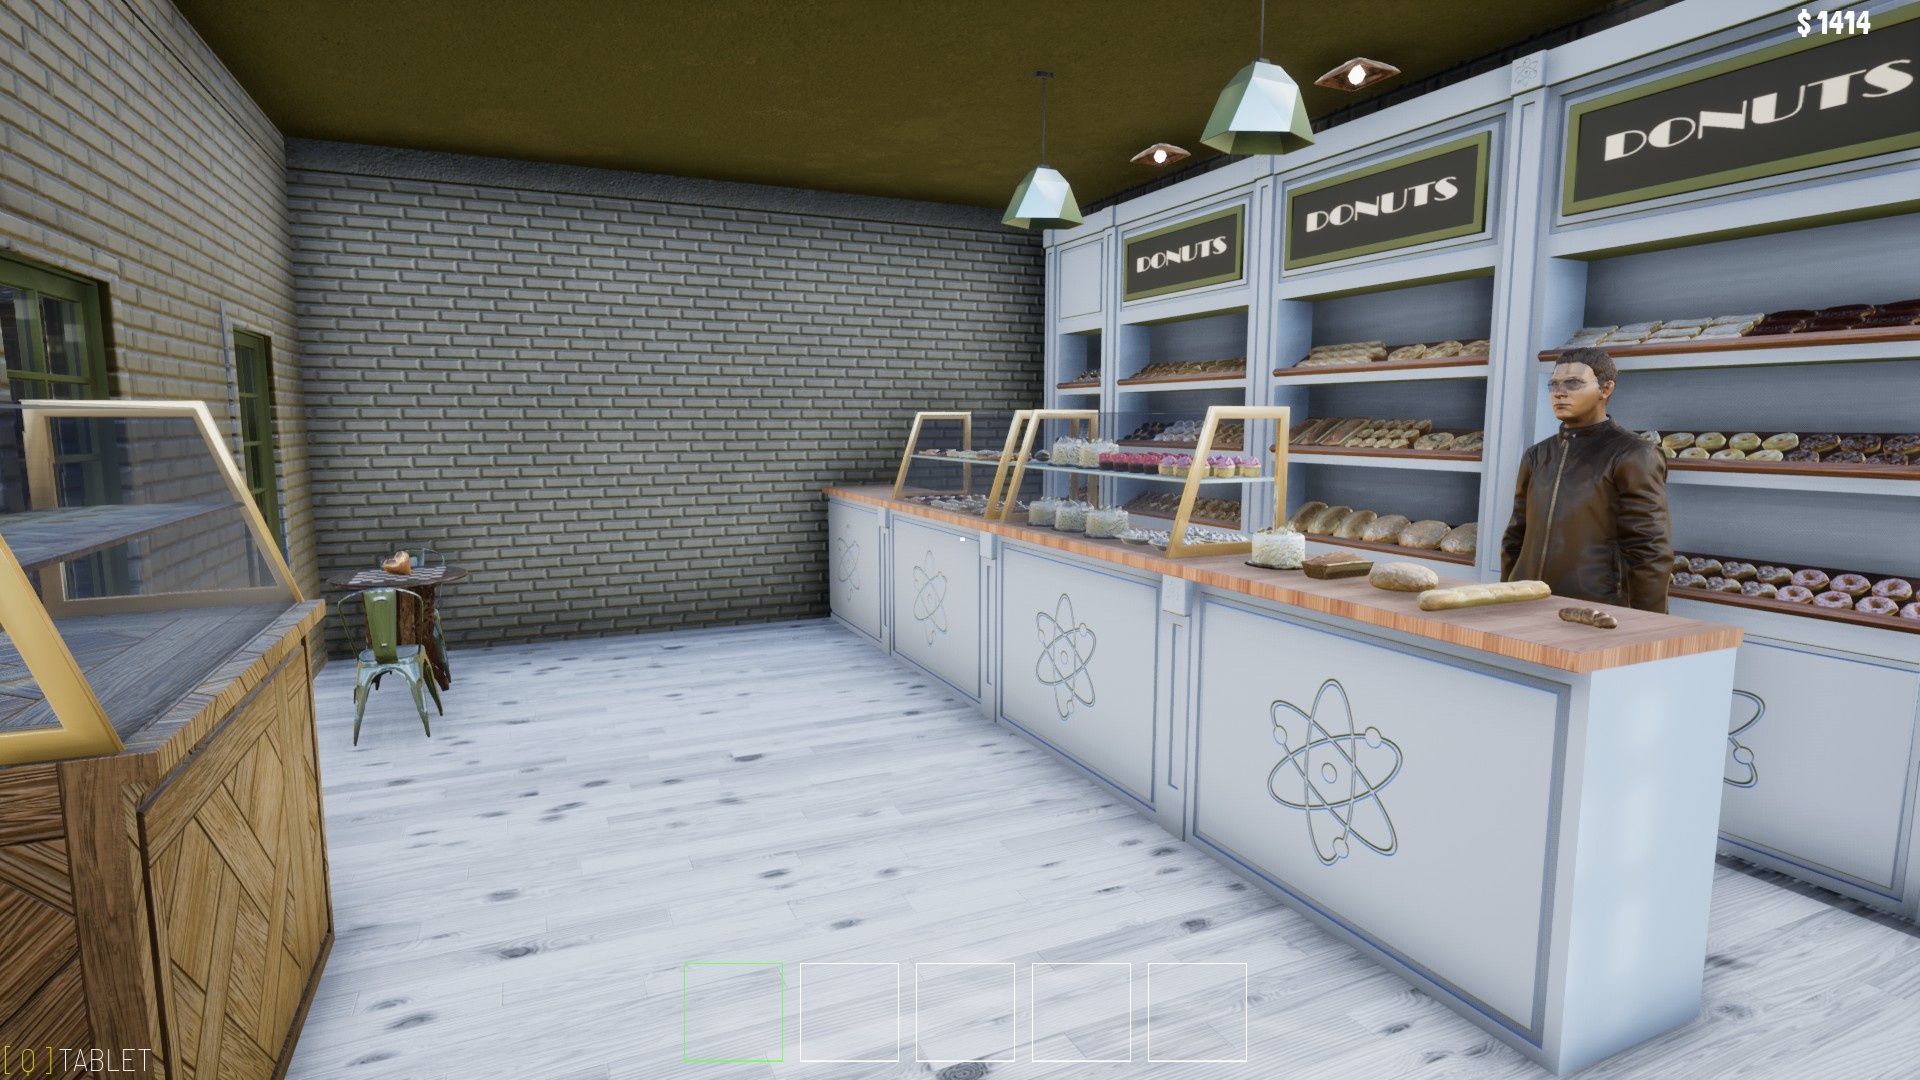 (Bij Atomic Bakery kopen we een paar soorten brood gewoon een van de gebouwen die lijden aan totaal ongepast design).